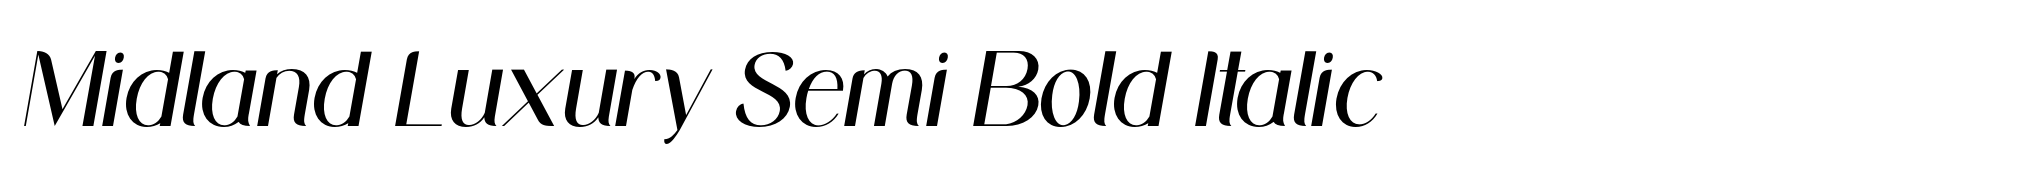 Midland Luxury Semi Bold Italic image